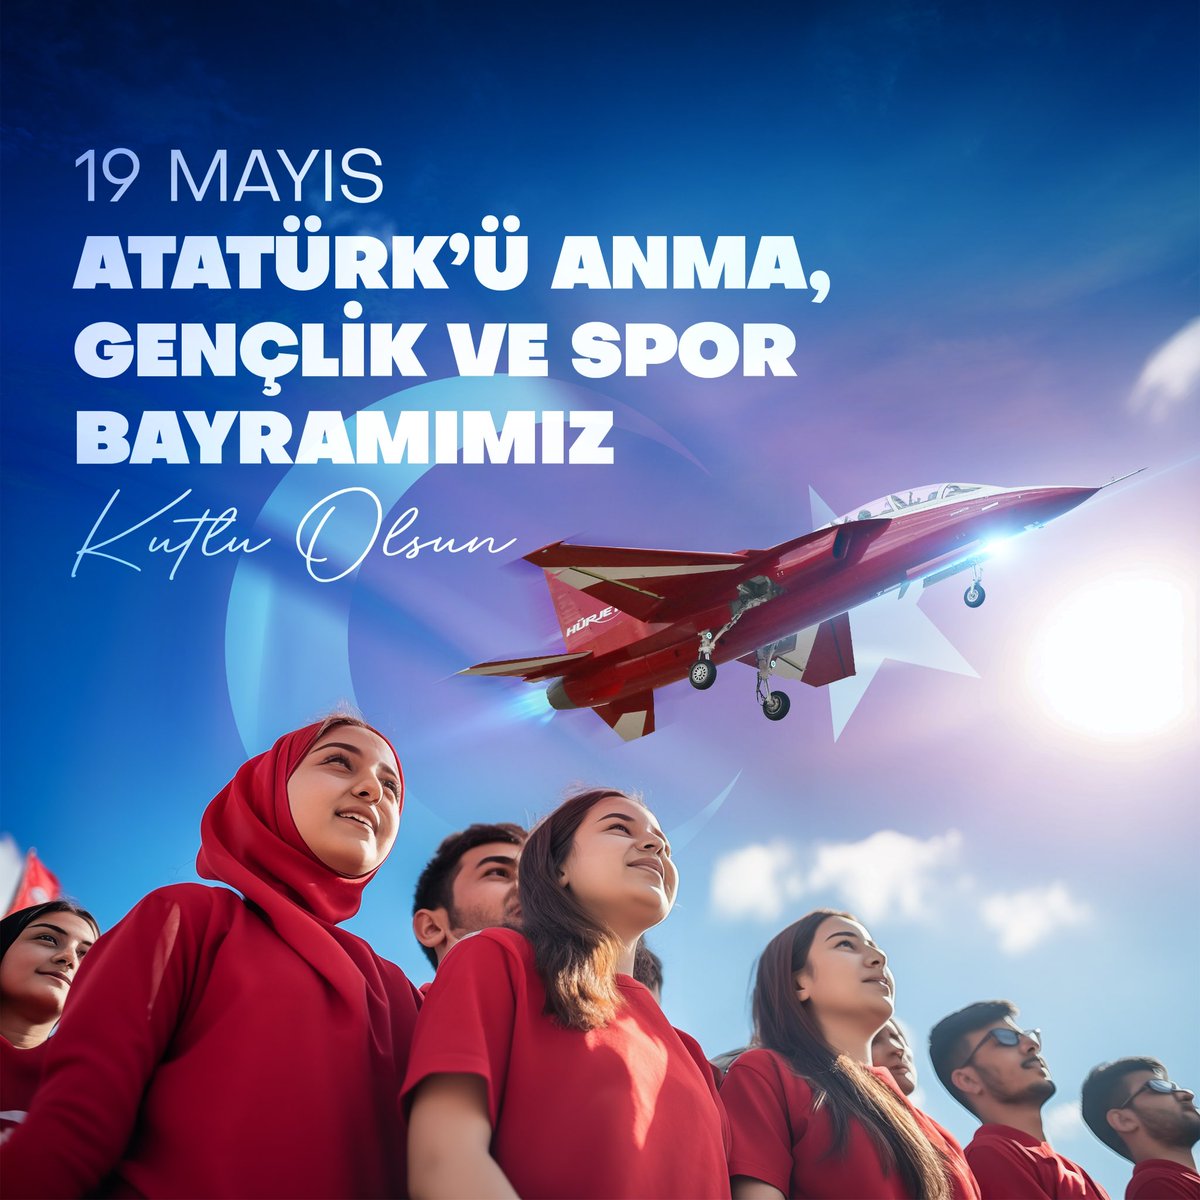 Geleceğe cesurca kanatlanan gençlerimize güvenimiz tam! Bize emanet her değerin izinde durmadan, yorulmadan birlikte ilerliyoruz. #19Mayıs Atatürk’ü Anma, Gençlik ve Spor Bayramımız kutlu olsun. 🇹🇷